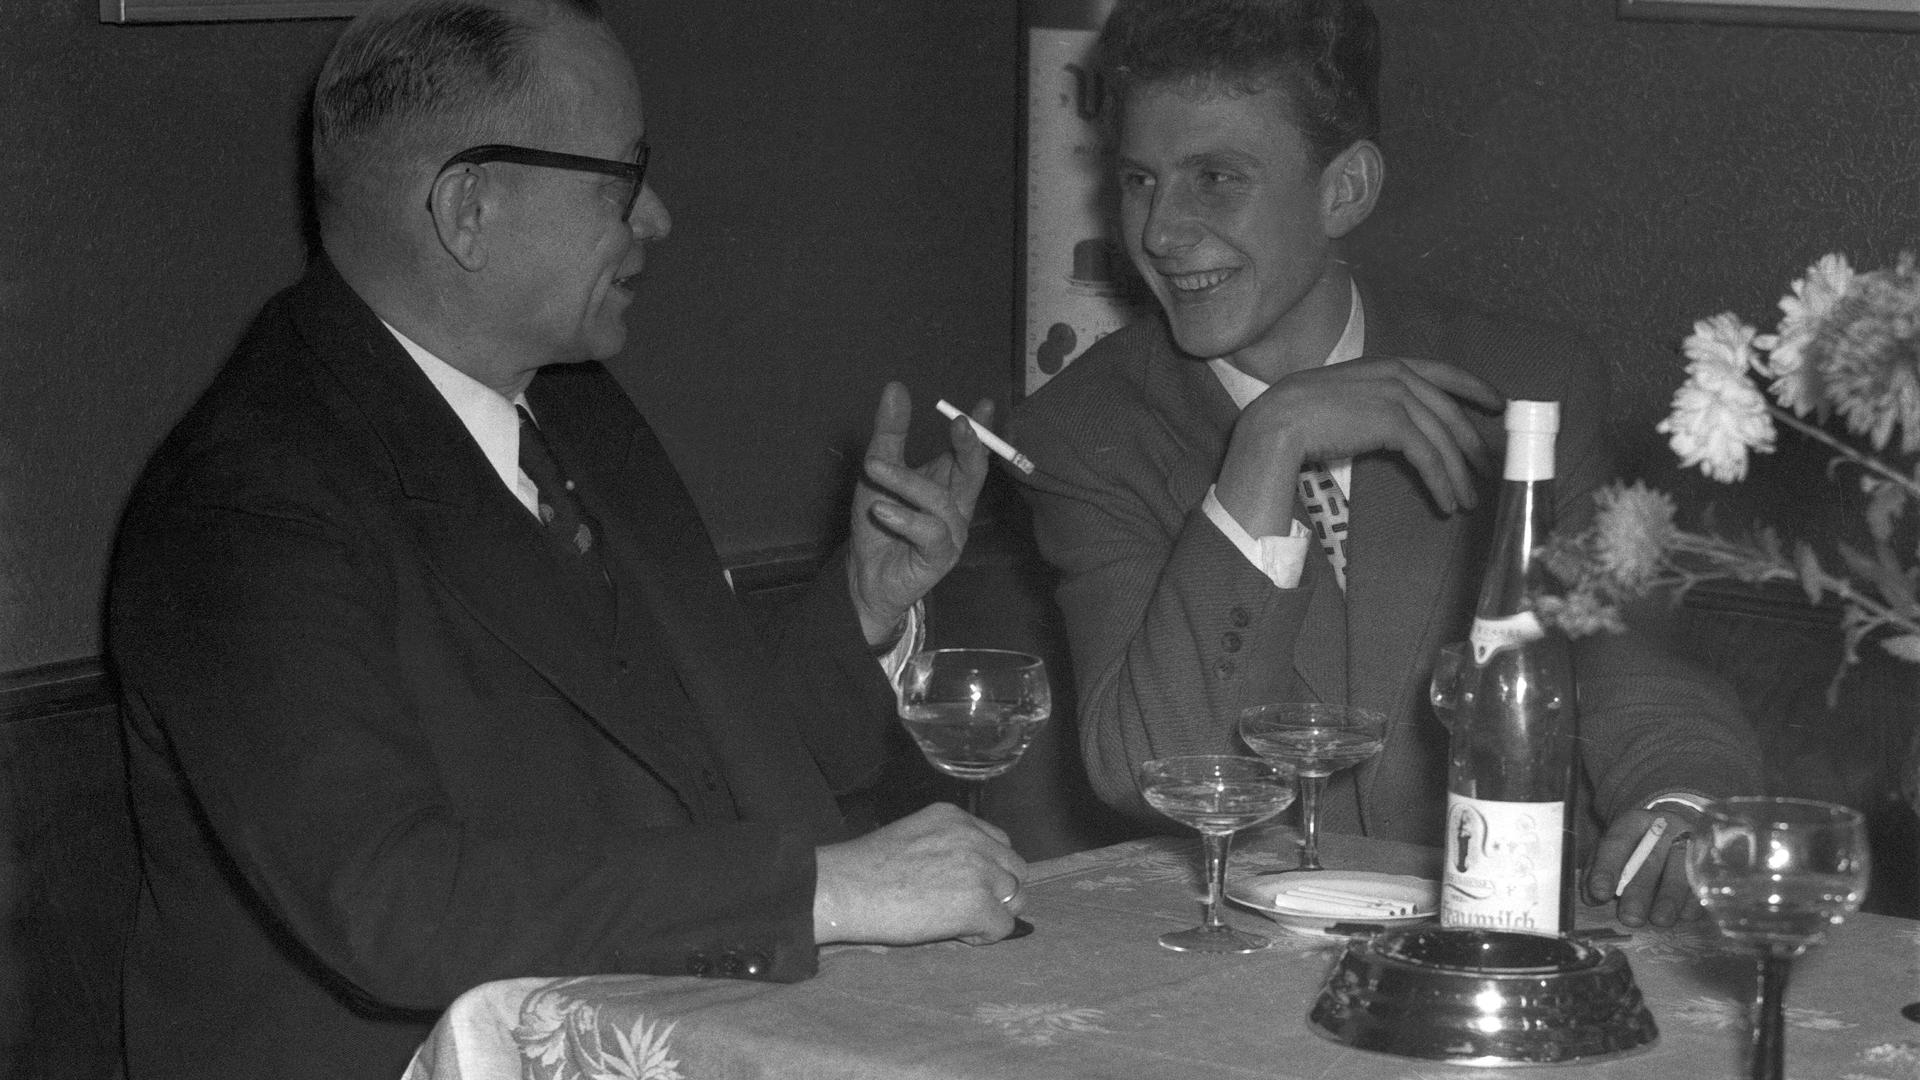 Zwei Männer unterhalten sich bei einer Flasche Wein und anderen alkoholischen Getränken.